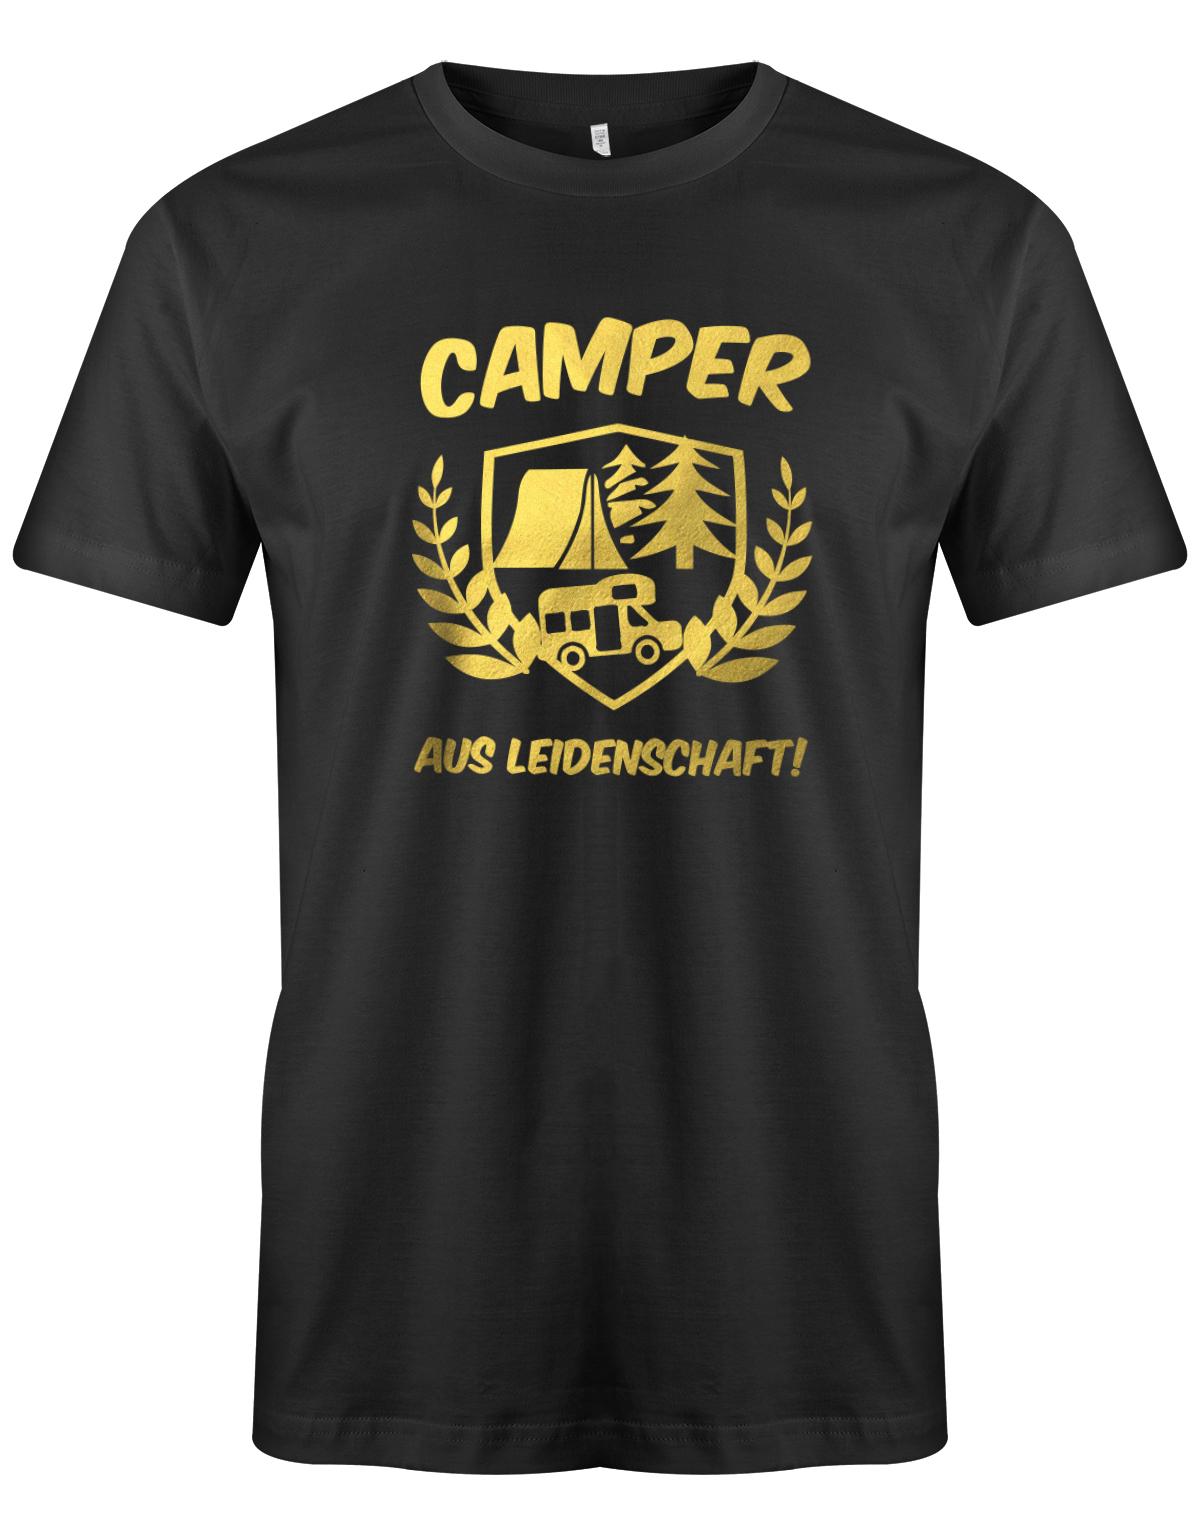 Camper-aus-leidenschaft-Herren-Camper-SHirt-SChwarz